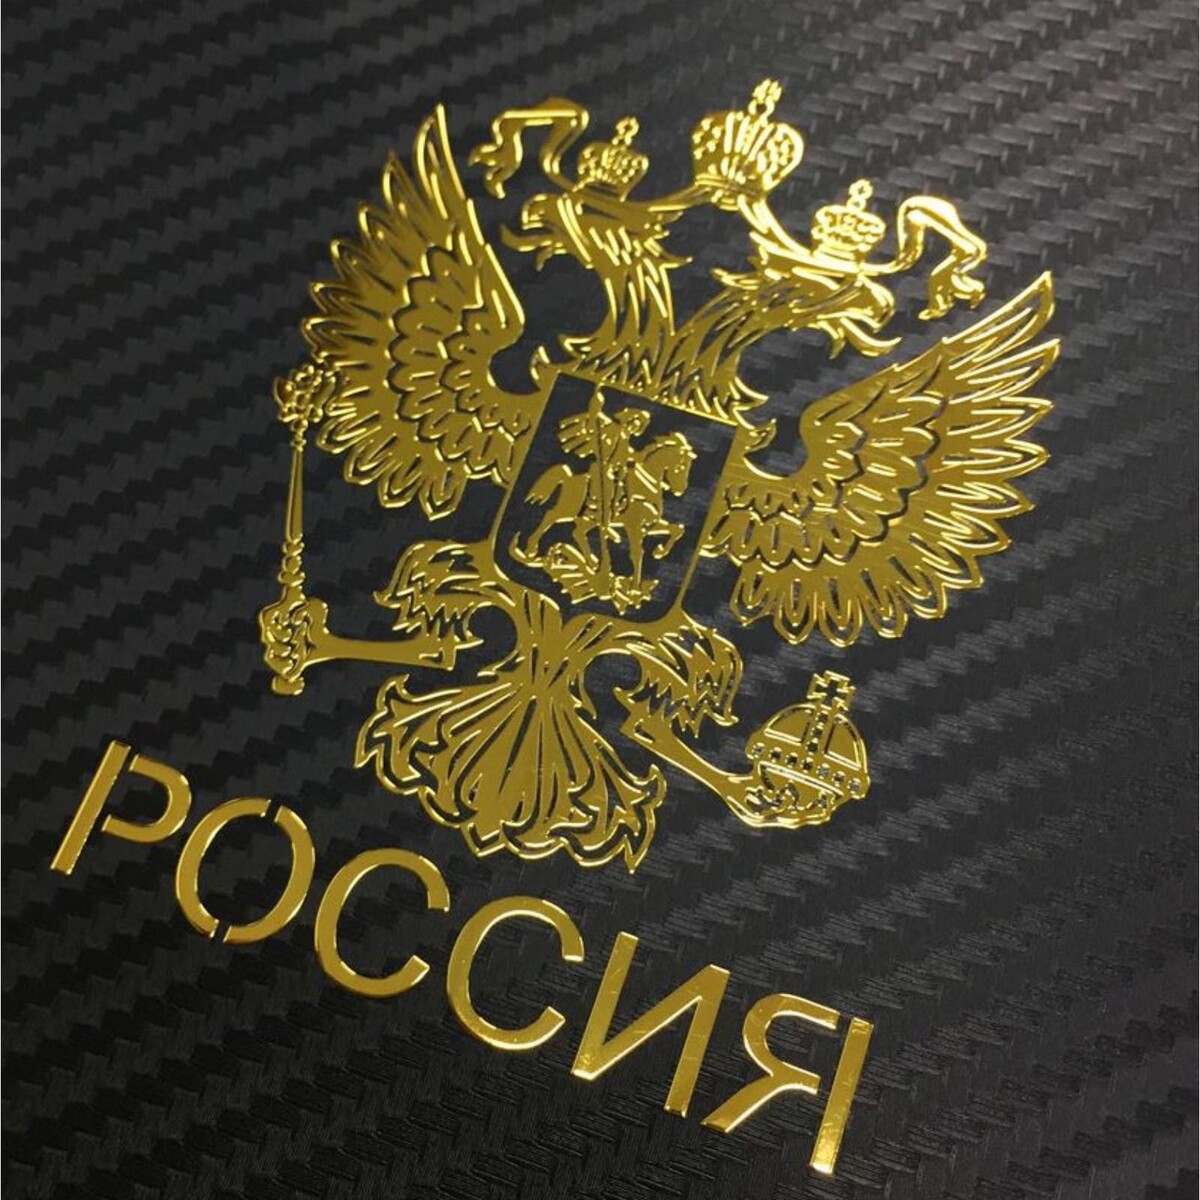 Наклейка на авто, герб россии, 9.1×7 см, золотистый молодые писатели россии